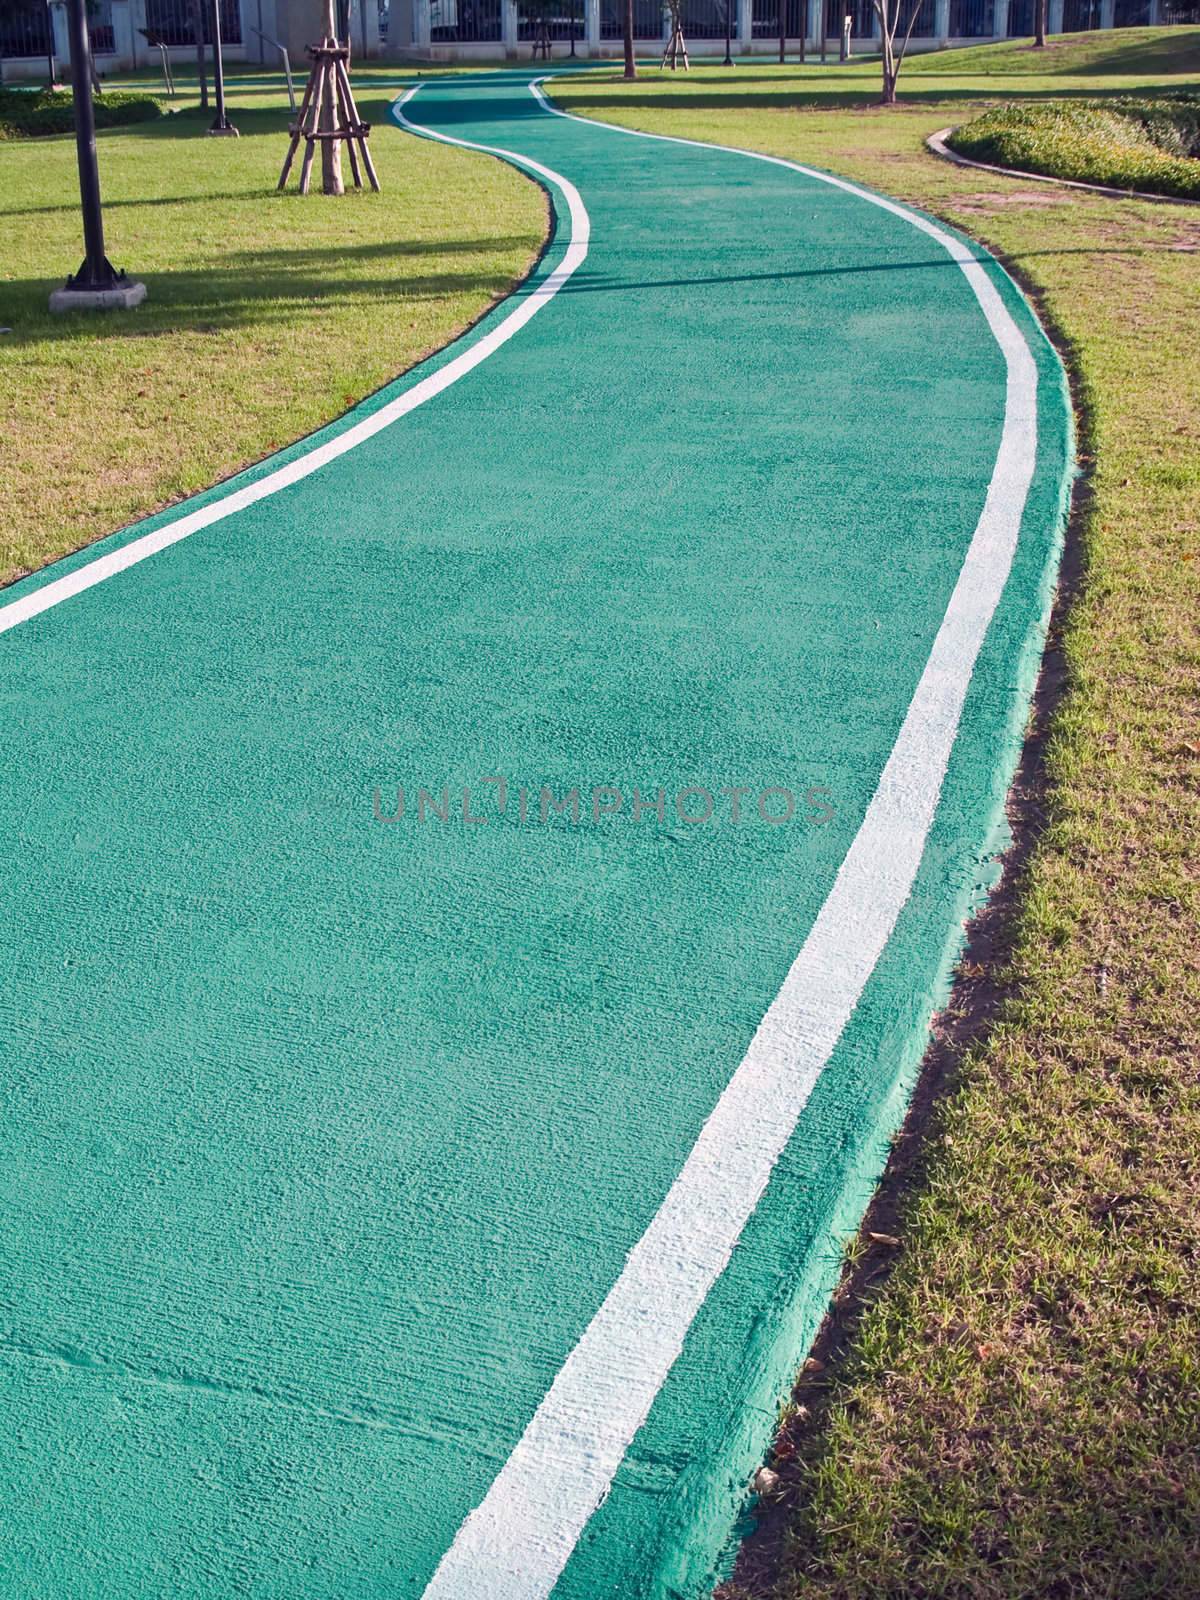 Green racecourse in public park